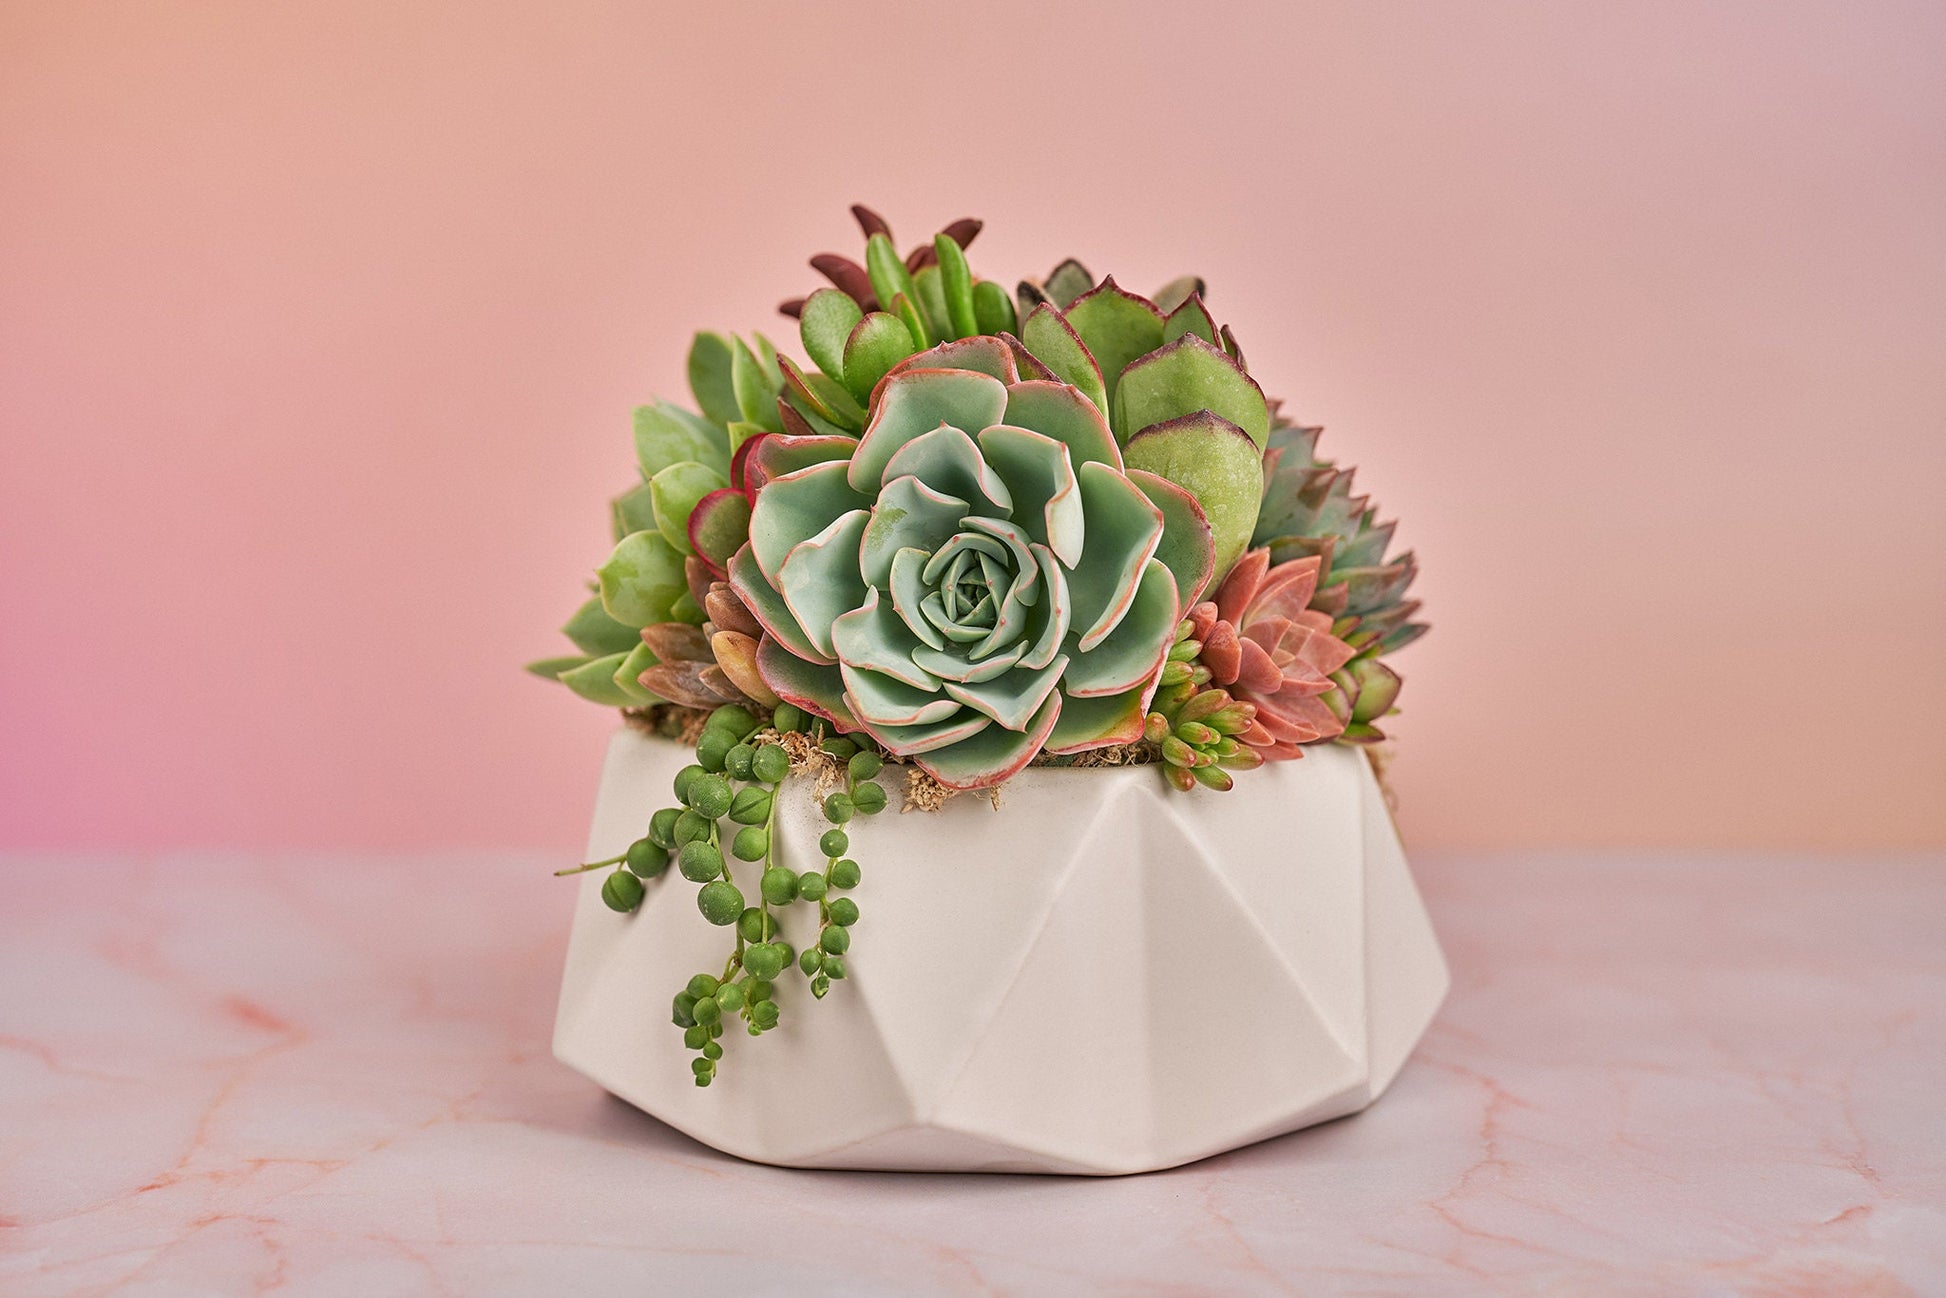 Geometric White Bowl Living Succulent Arrangement Gift | Alt Floral Wedding Event Centerpiece